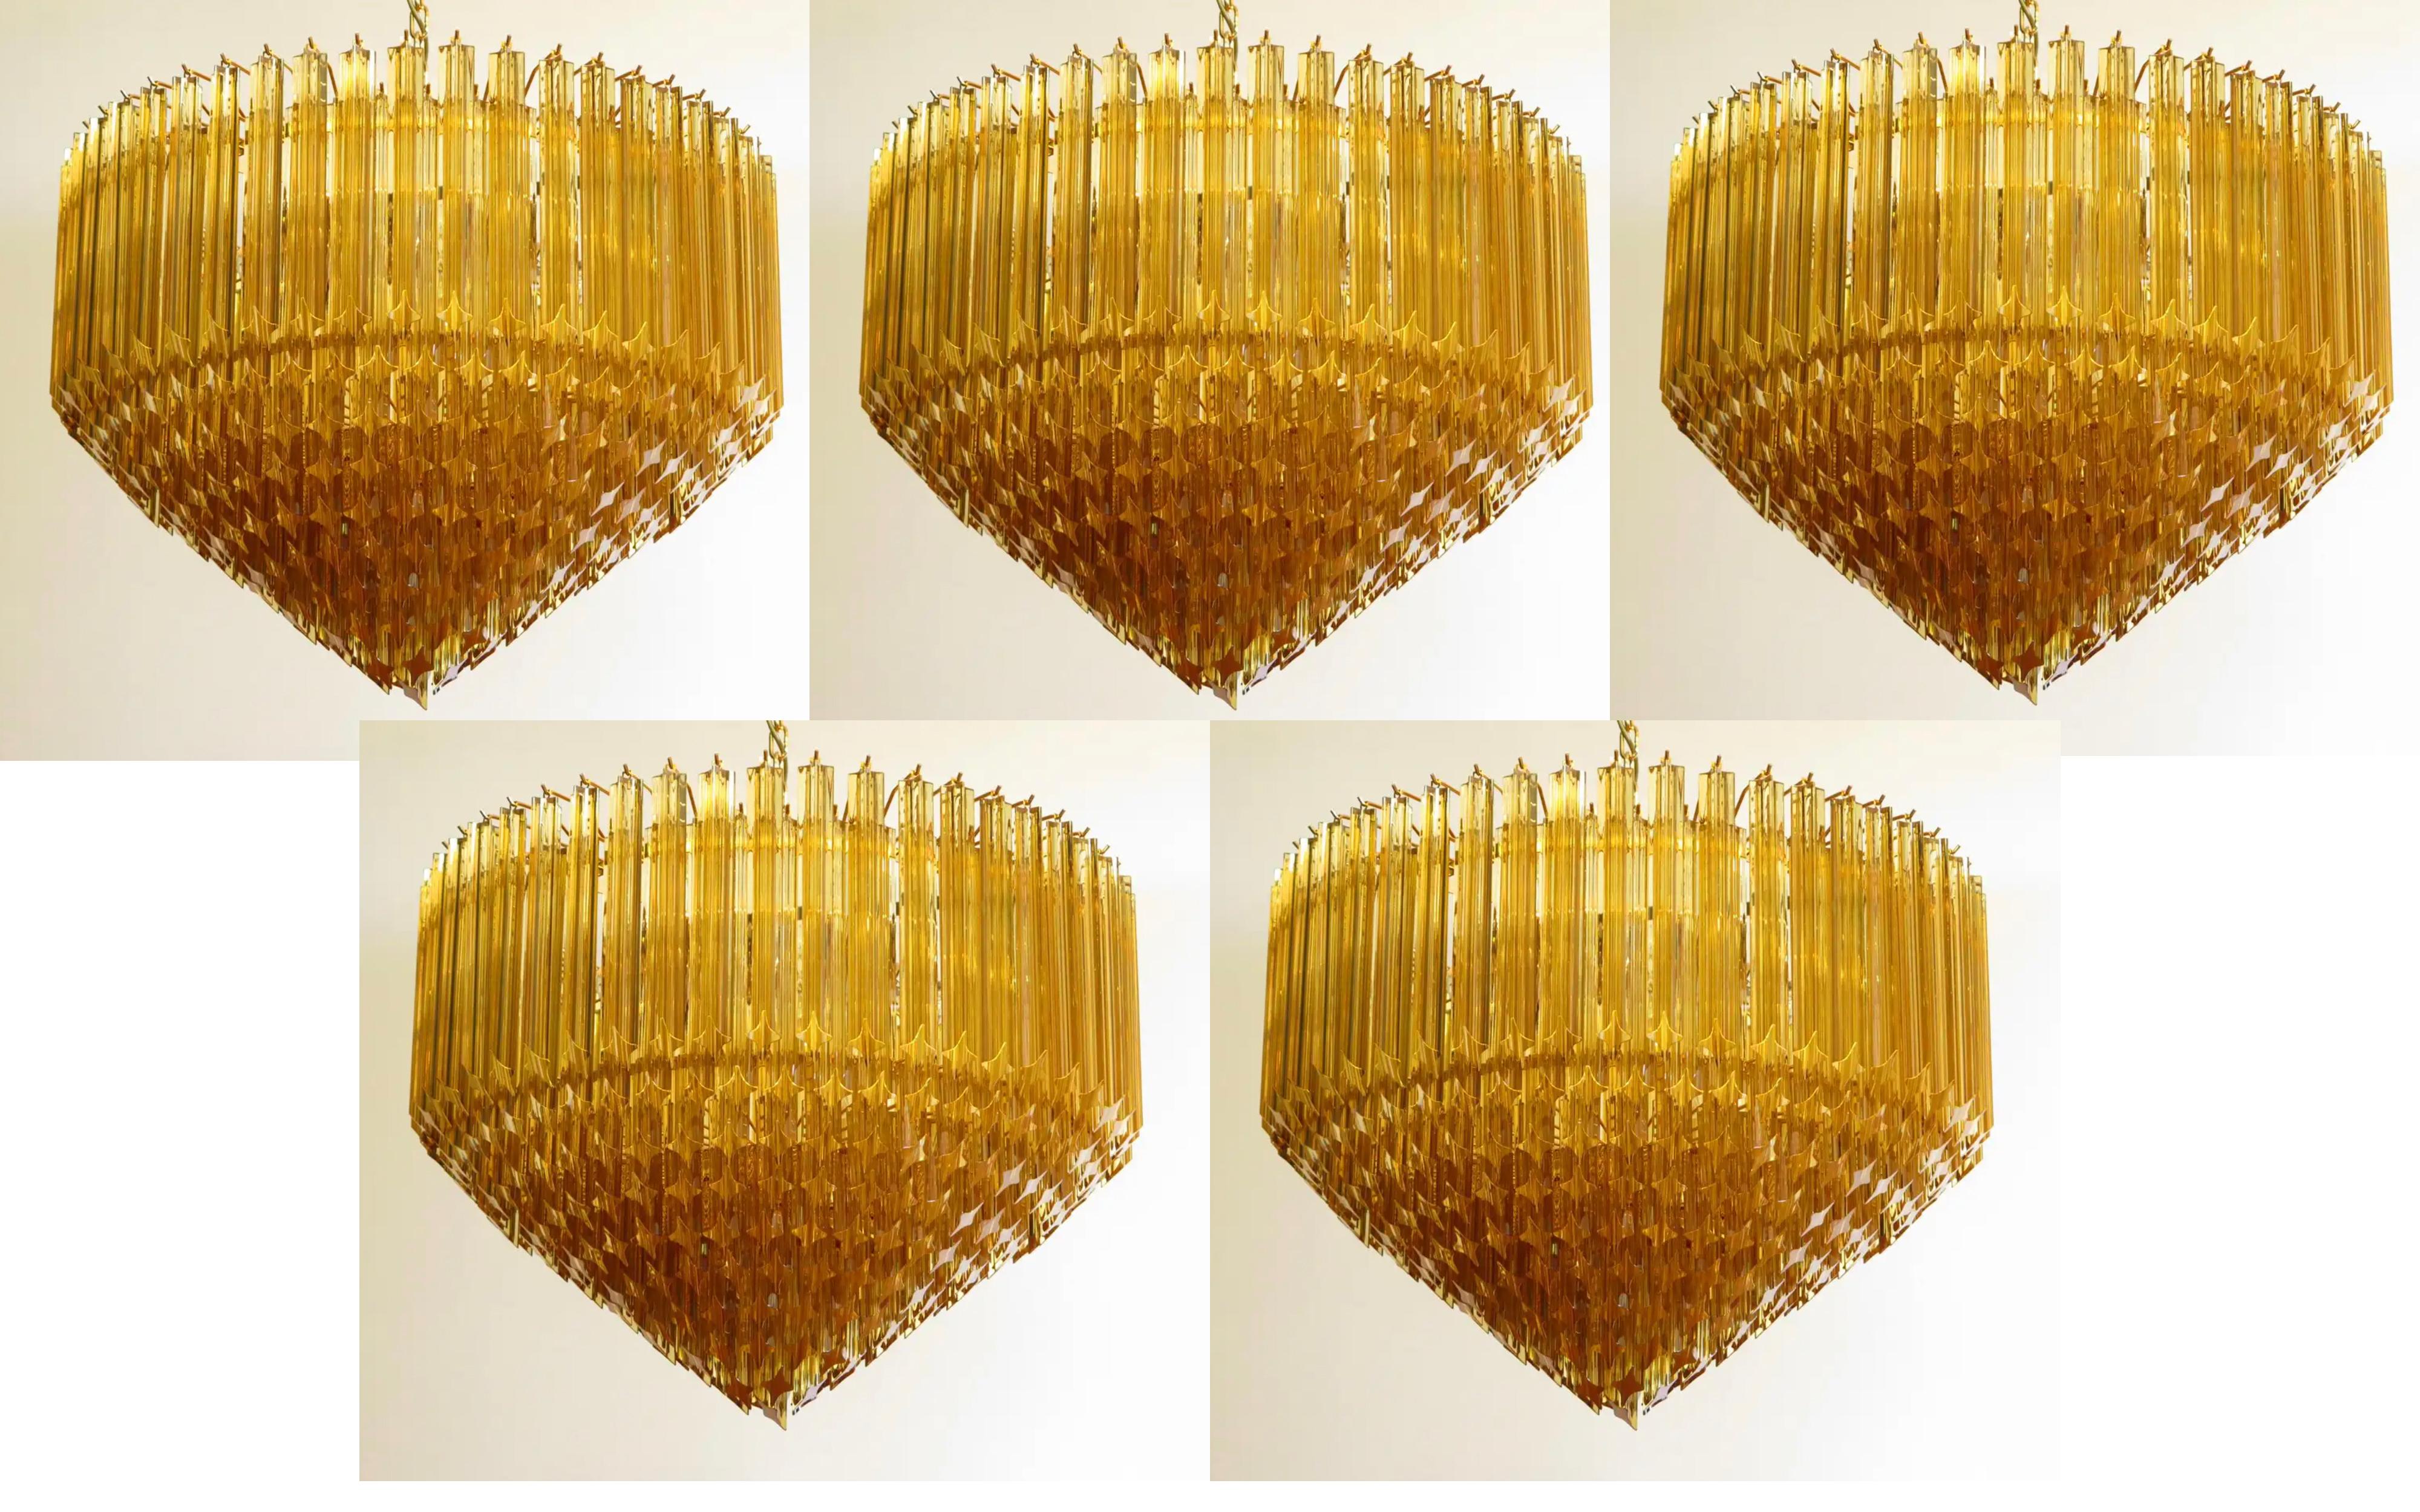 Ein prächtiger Muranoglas-Kronleuchter, 265 Bernstein-Vitriedri auf Goldrahmen. Dieser große italienische Kronleuchter aus der Mitte des Jahrhunderts ist ein wahrer zeitloser Klassiker. Produktangebot, prompte Lieferung.
Abmessungen: 57,10 Zoll